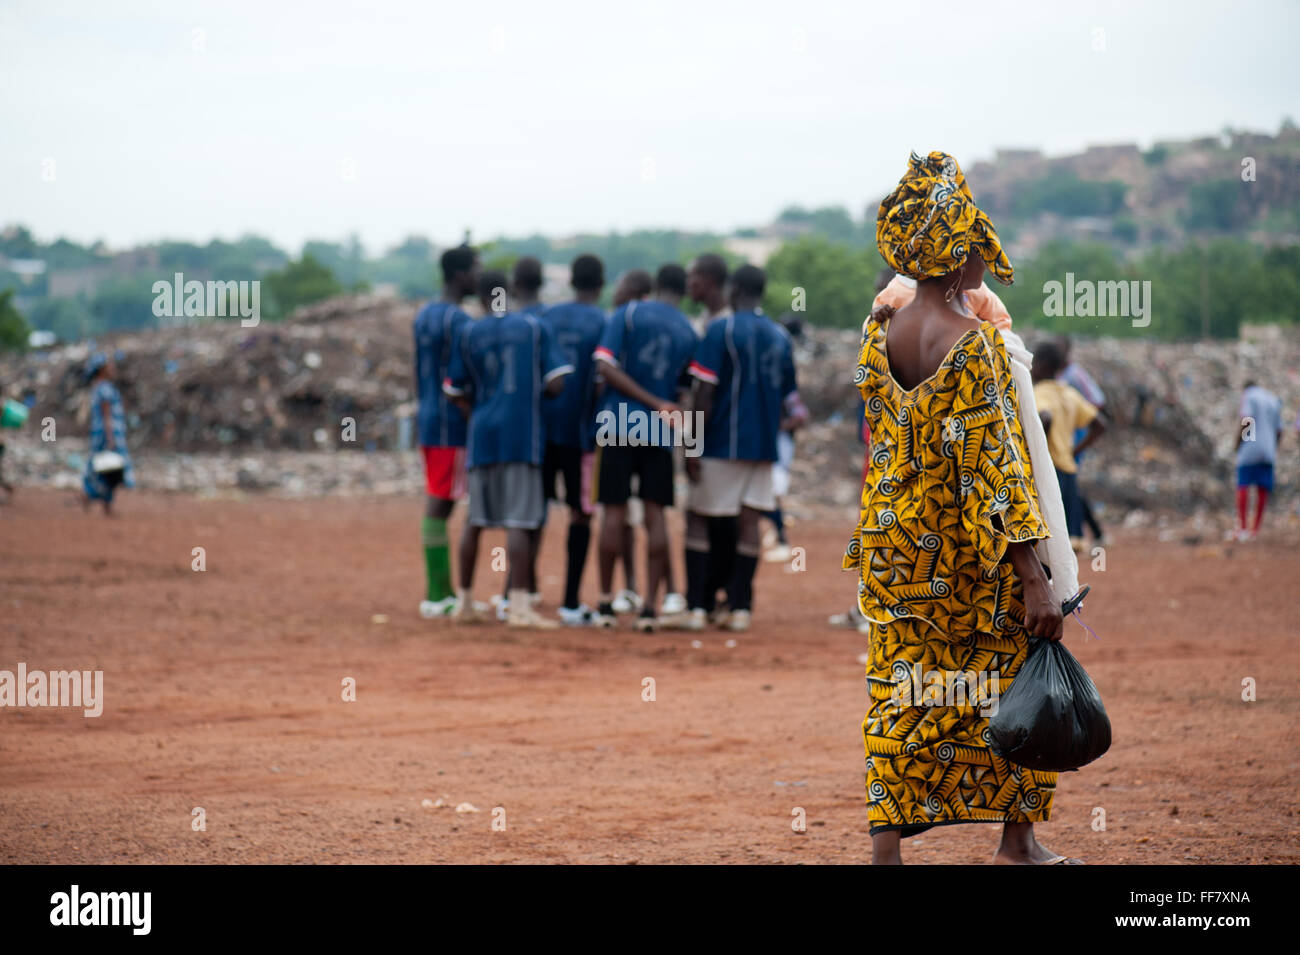 Mali, Afrique - femme noire autour de l'équipe de soccer près de Bamako. Dépotoir Banque D'Images